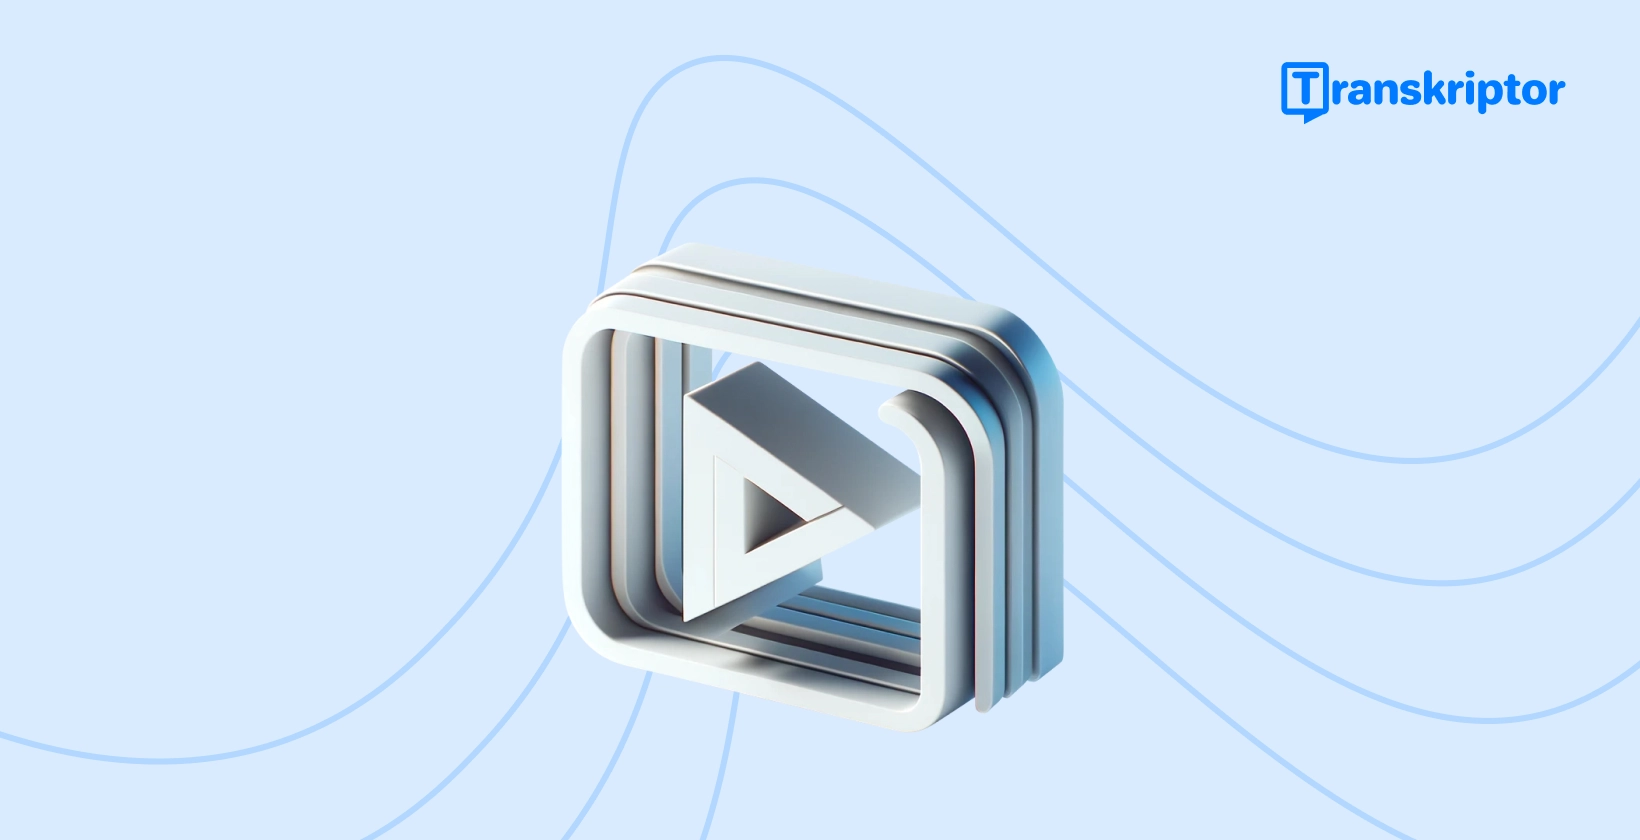 Banner tutorial passo a passo sobre como adicionar legendas a vídeos, com um ícone de botão de reprodução simbolizando a edição de vídeo.